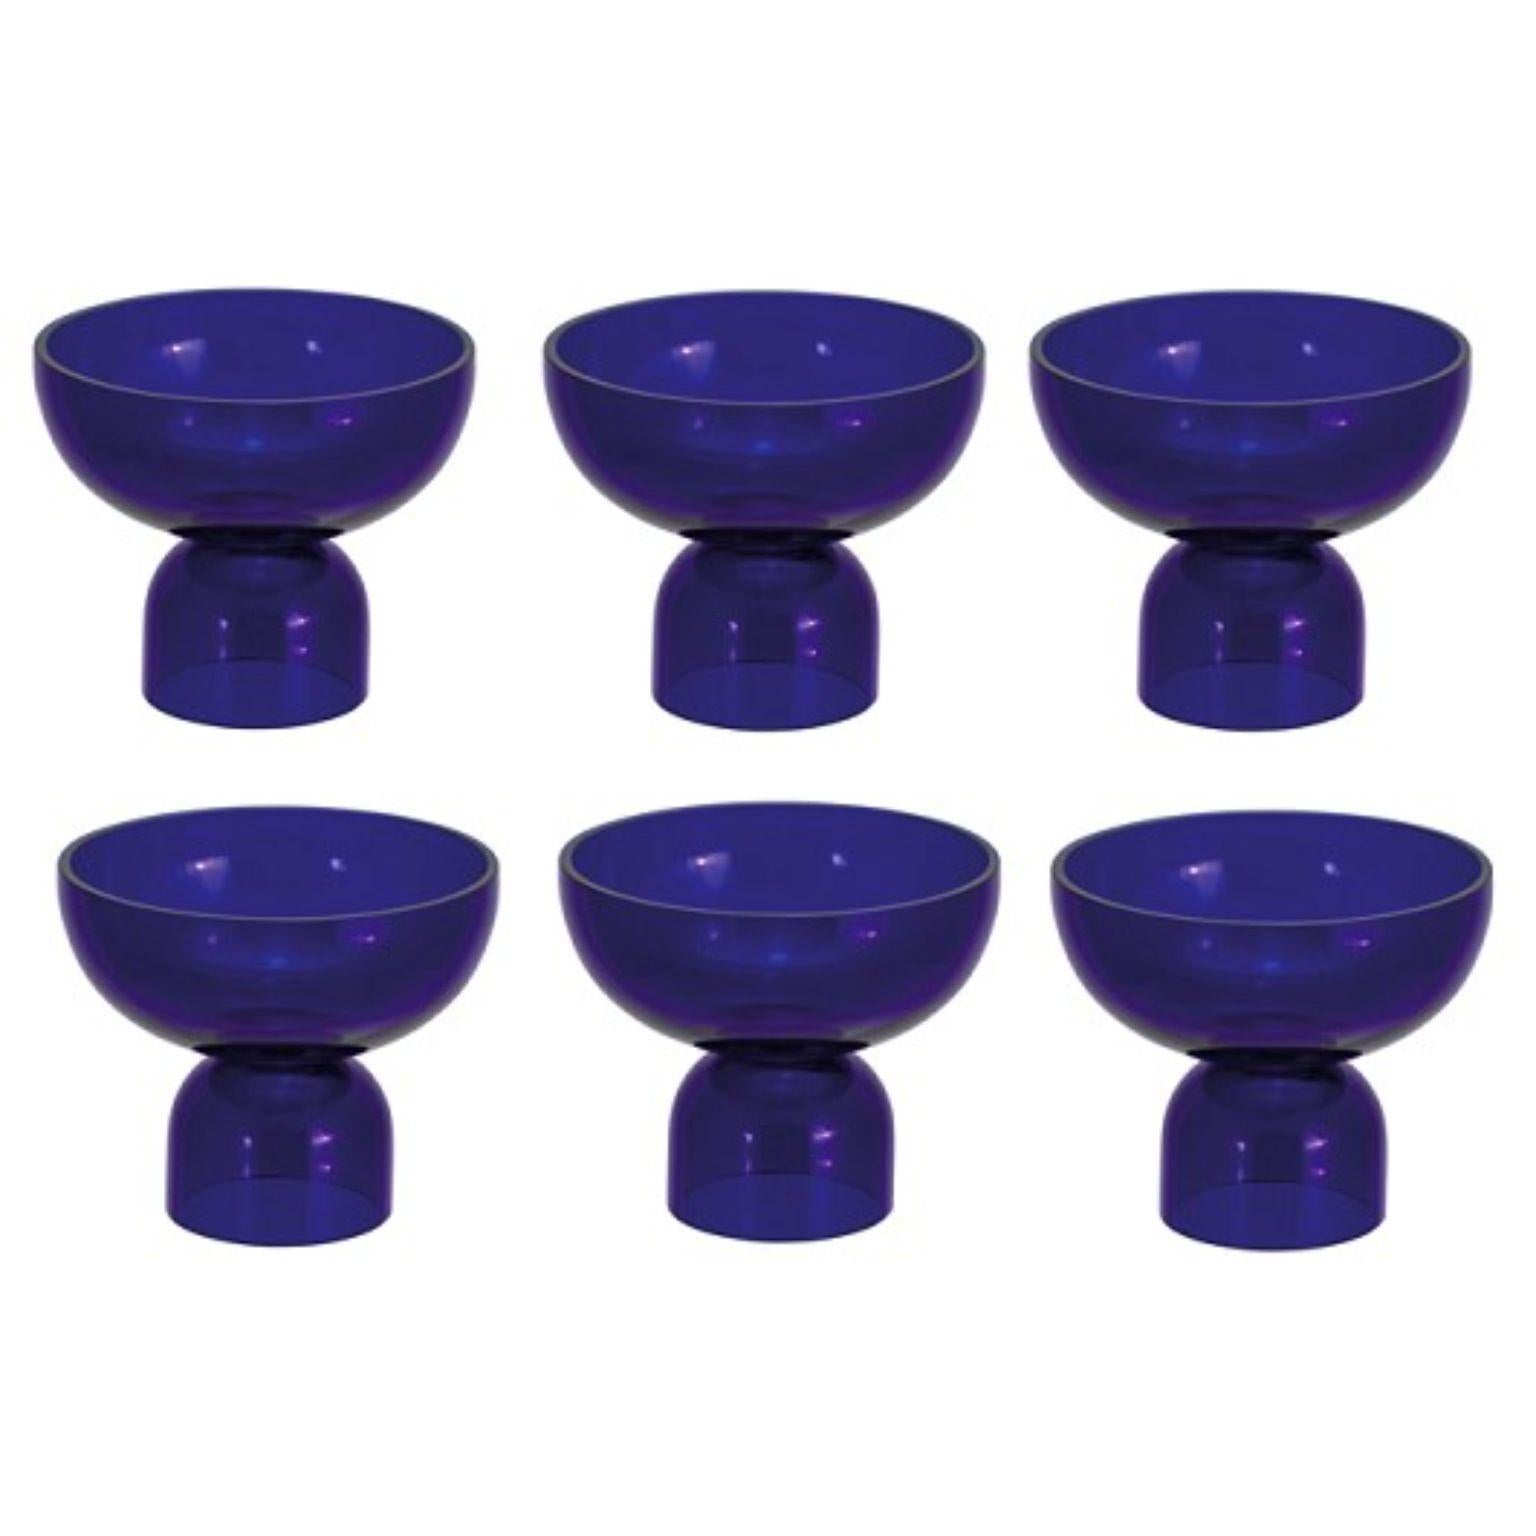 Ensemble de 6 verres Cobalt de Pulpo
Dimensions : D11 x H9 cm
MATERIAL : verre fait à la main

Cueillez-les, versez-les, roulez-les et tenez-les ; un kaléidoscope de couleurs, de formes et de textures vous attend. Les collections de pots-pourris de